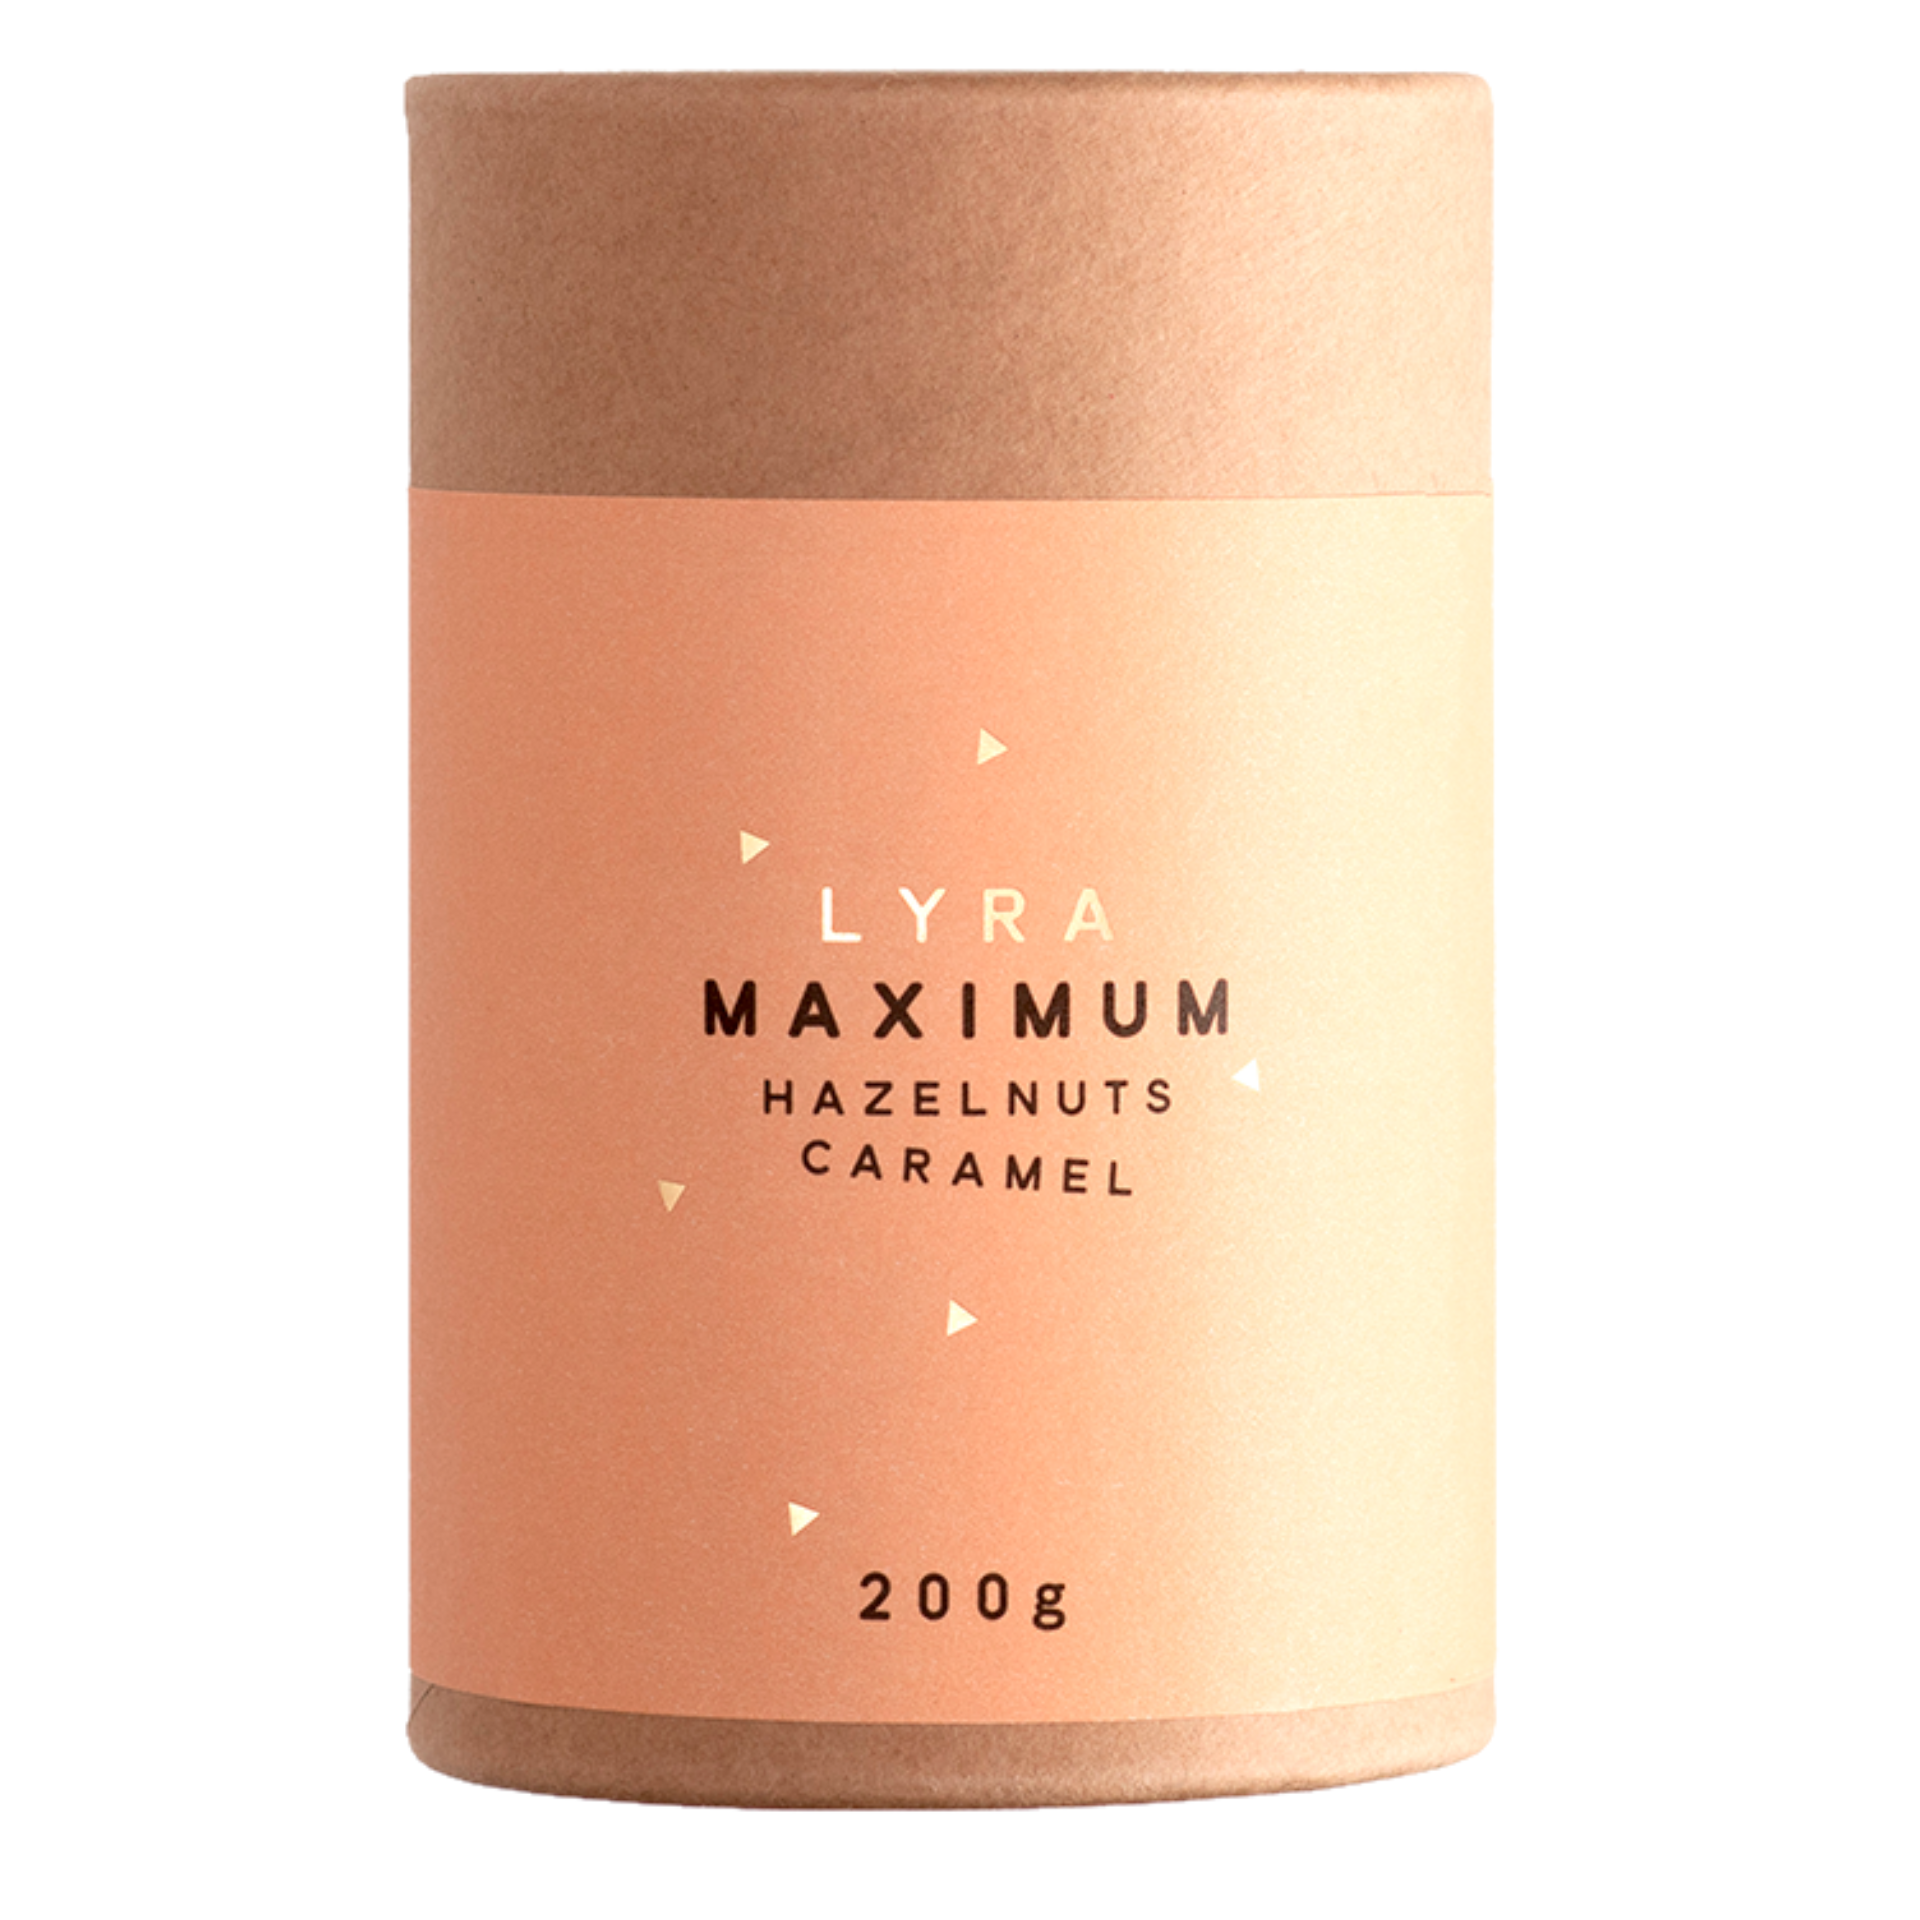 Maximum Hazelnuts Caramel 200g Lyra